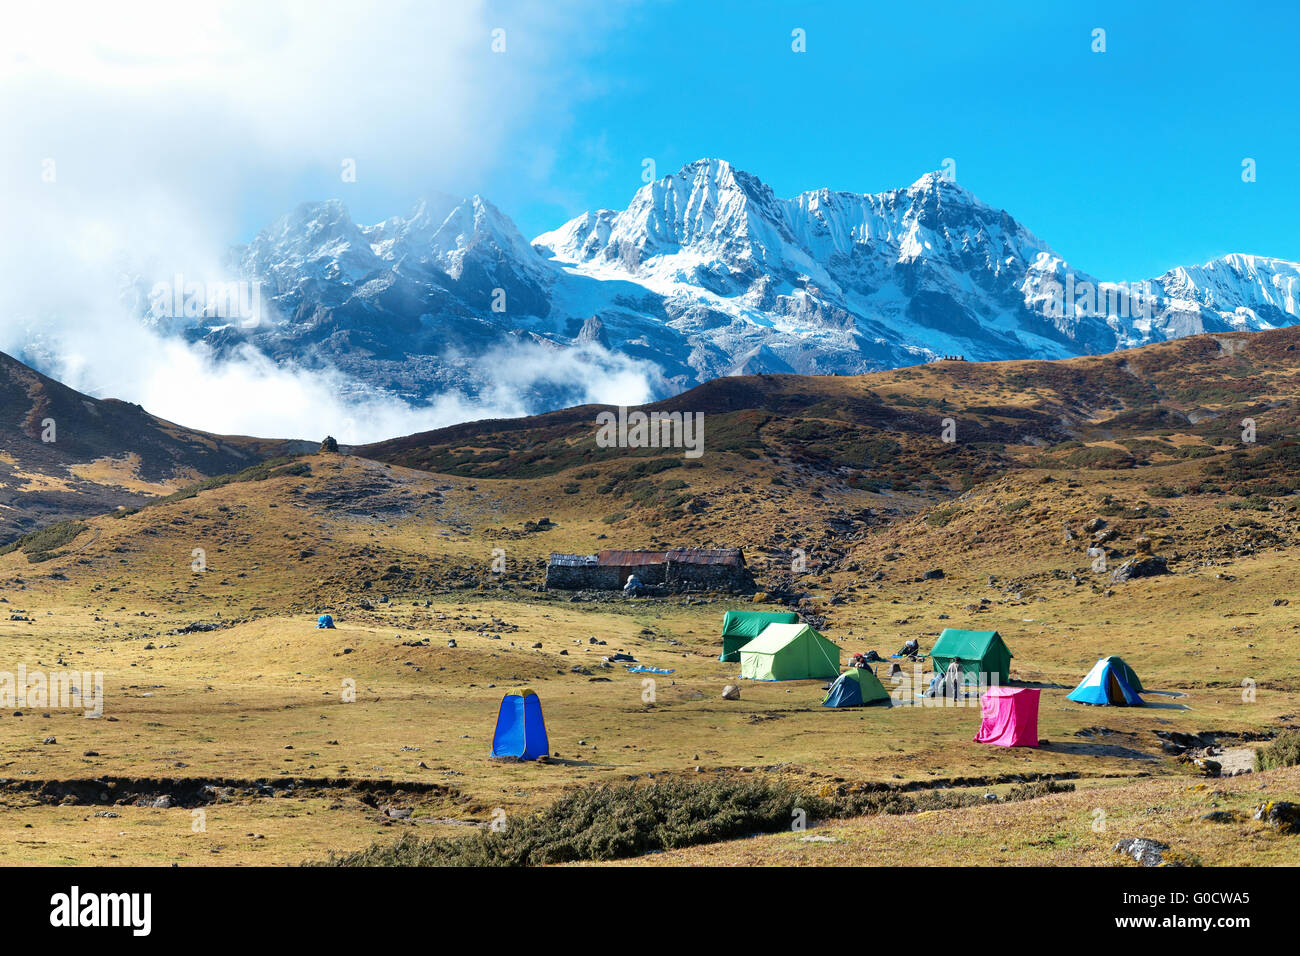 Campingplatz mit Zelten auf dem Gipfel hoher Berge Stockfoto